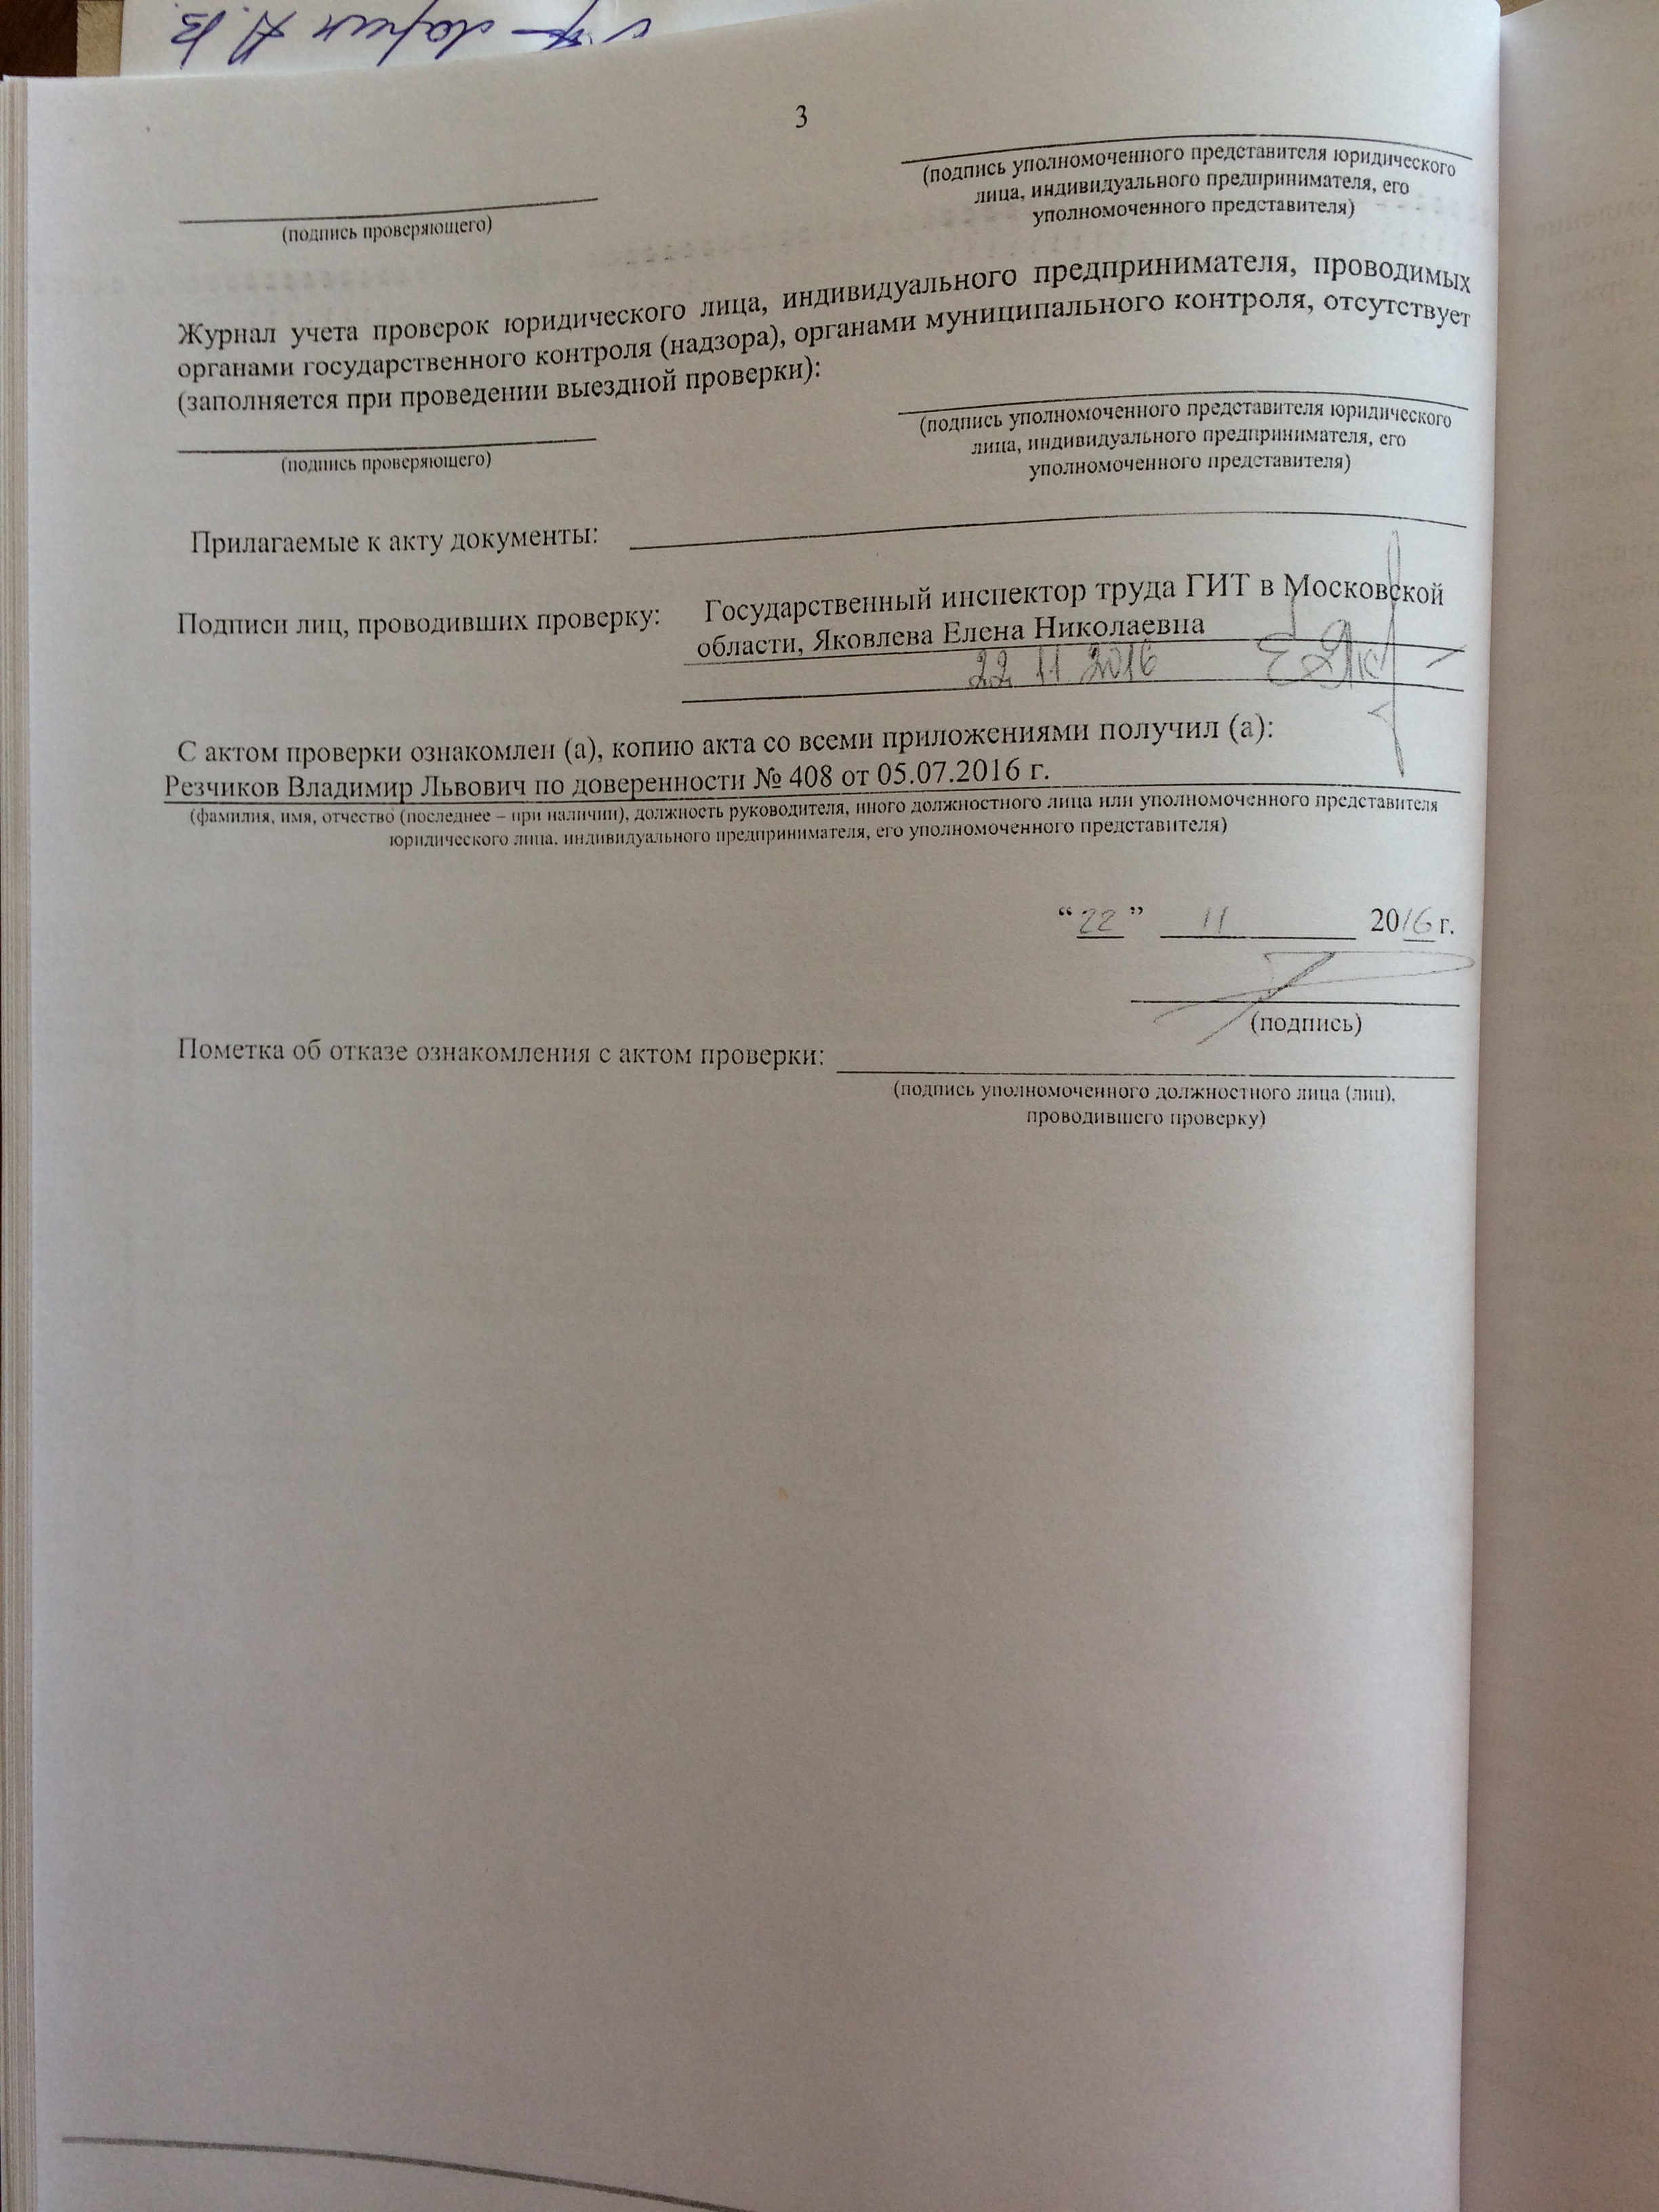 Фото документов проверки Луховицкой городской прокуратурой - 118 (5)